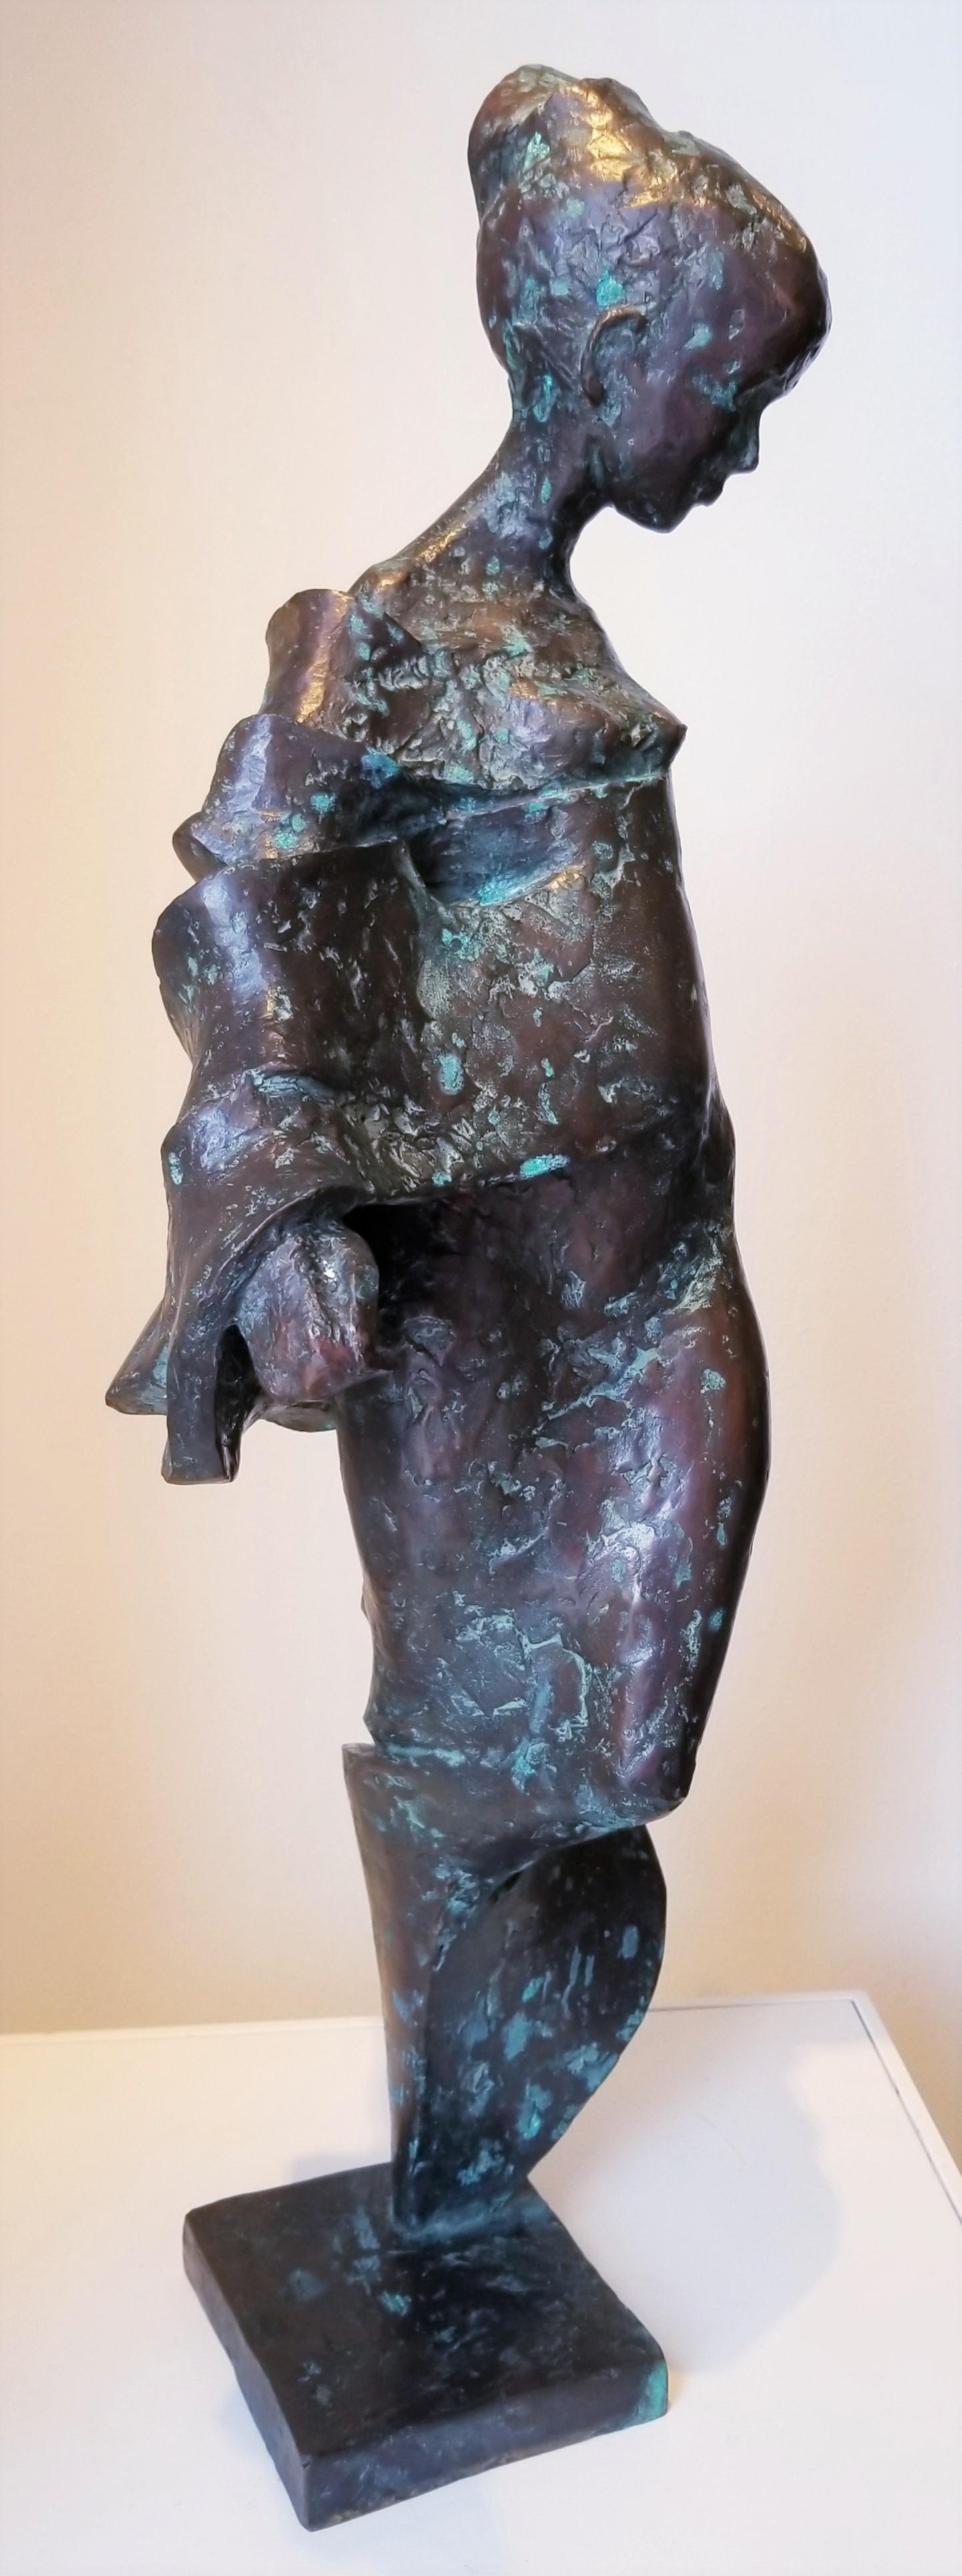 Peter Mandl Figurative Sculpture - Danae